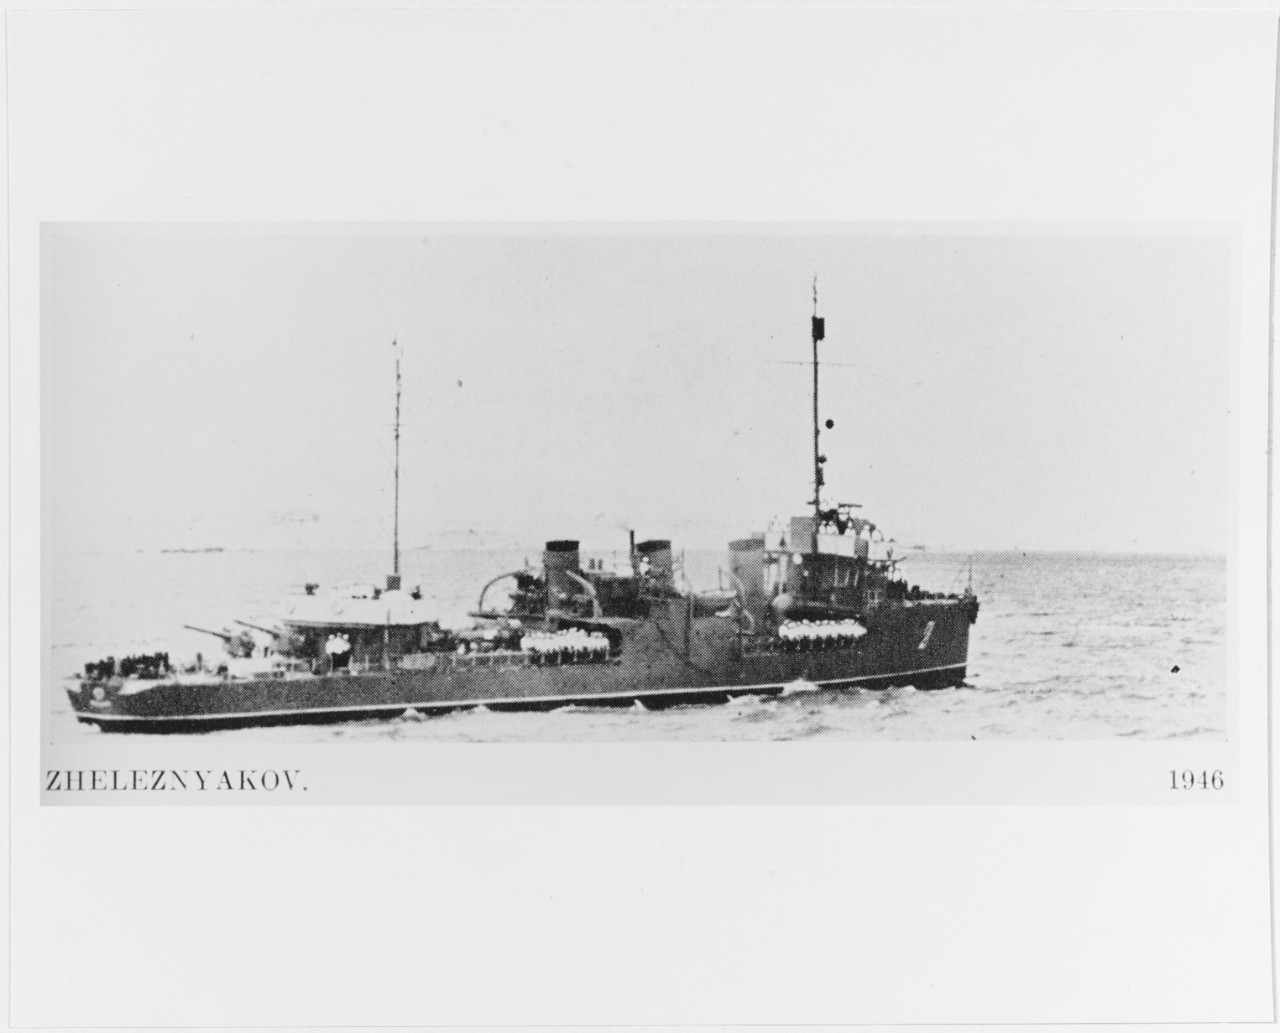 ZHELEZNIAKOV (Soviet destroyer, 1916-1949)